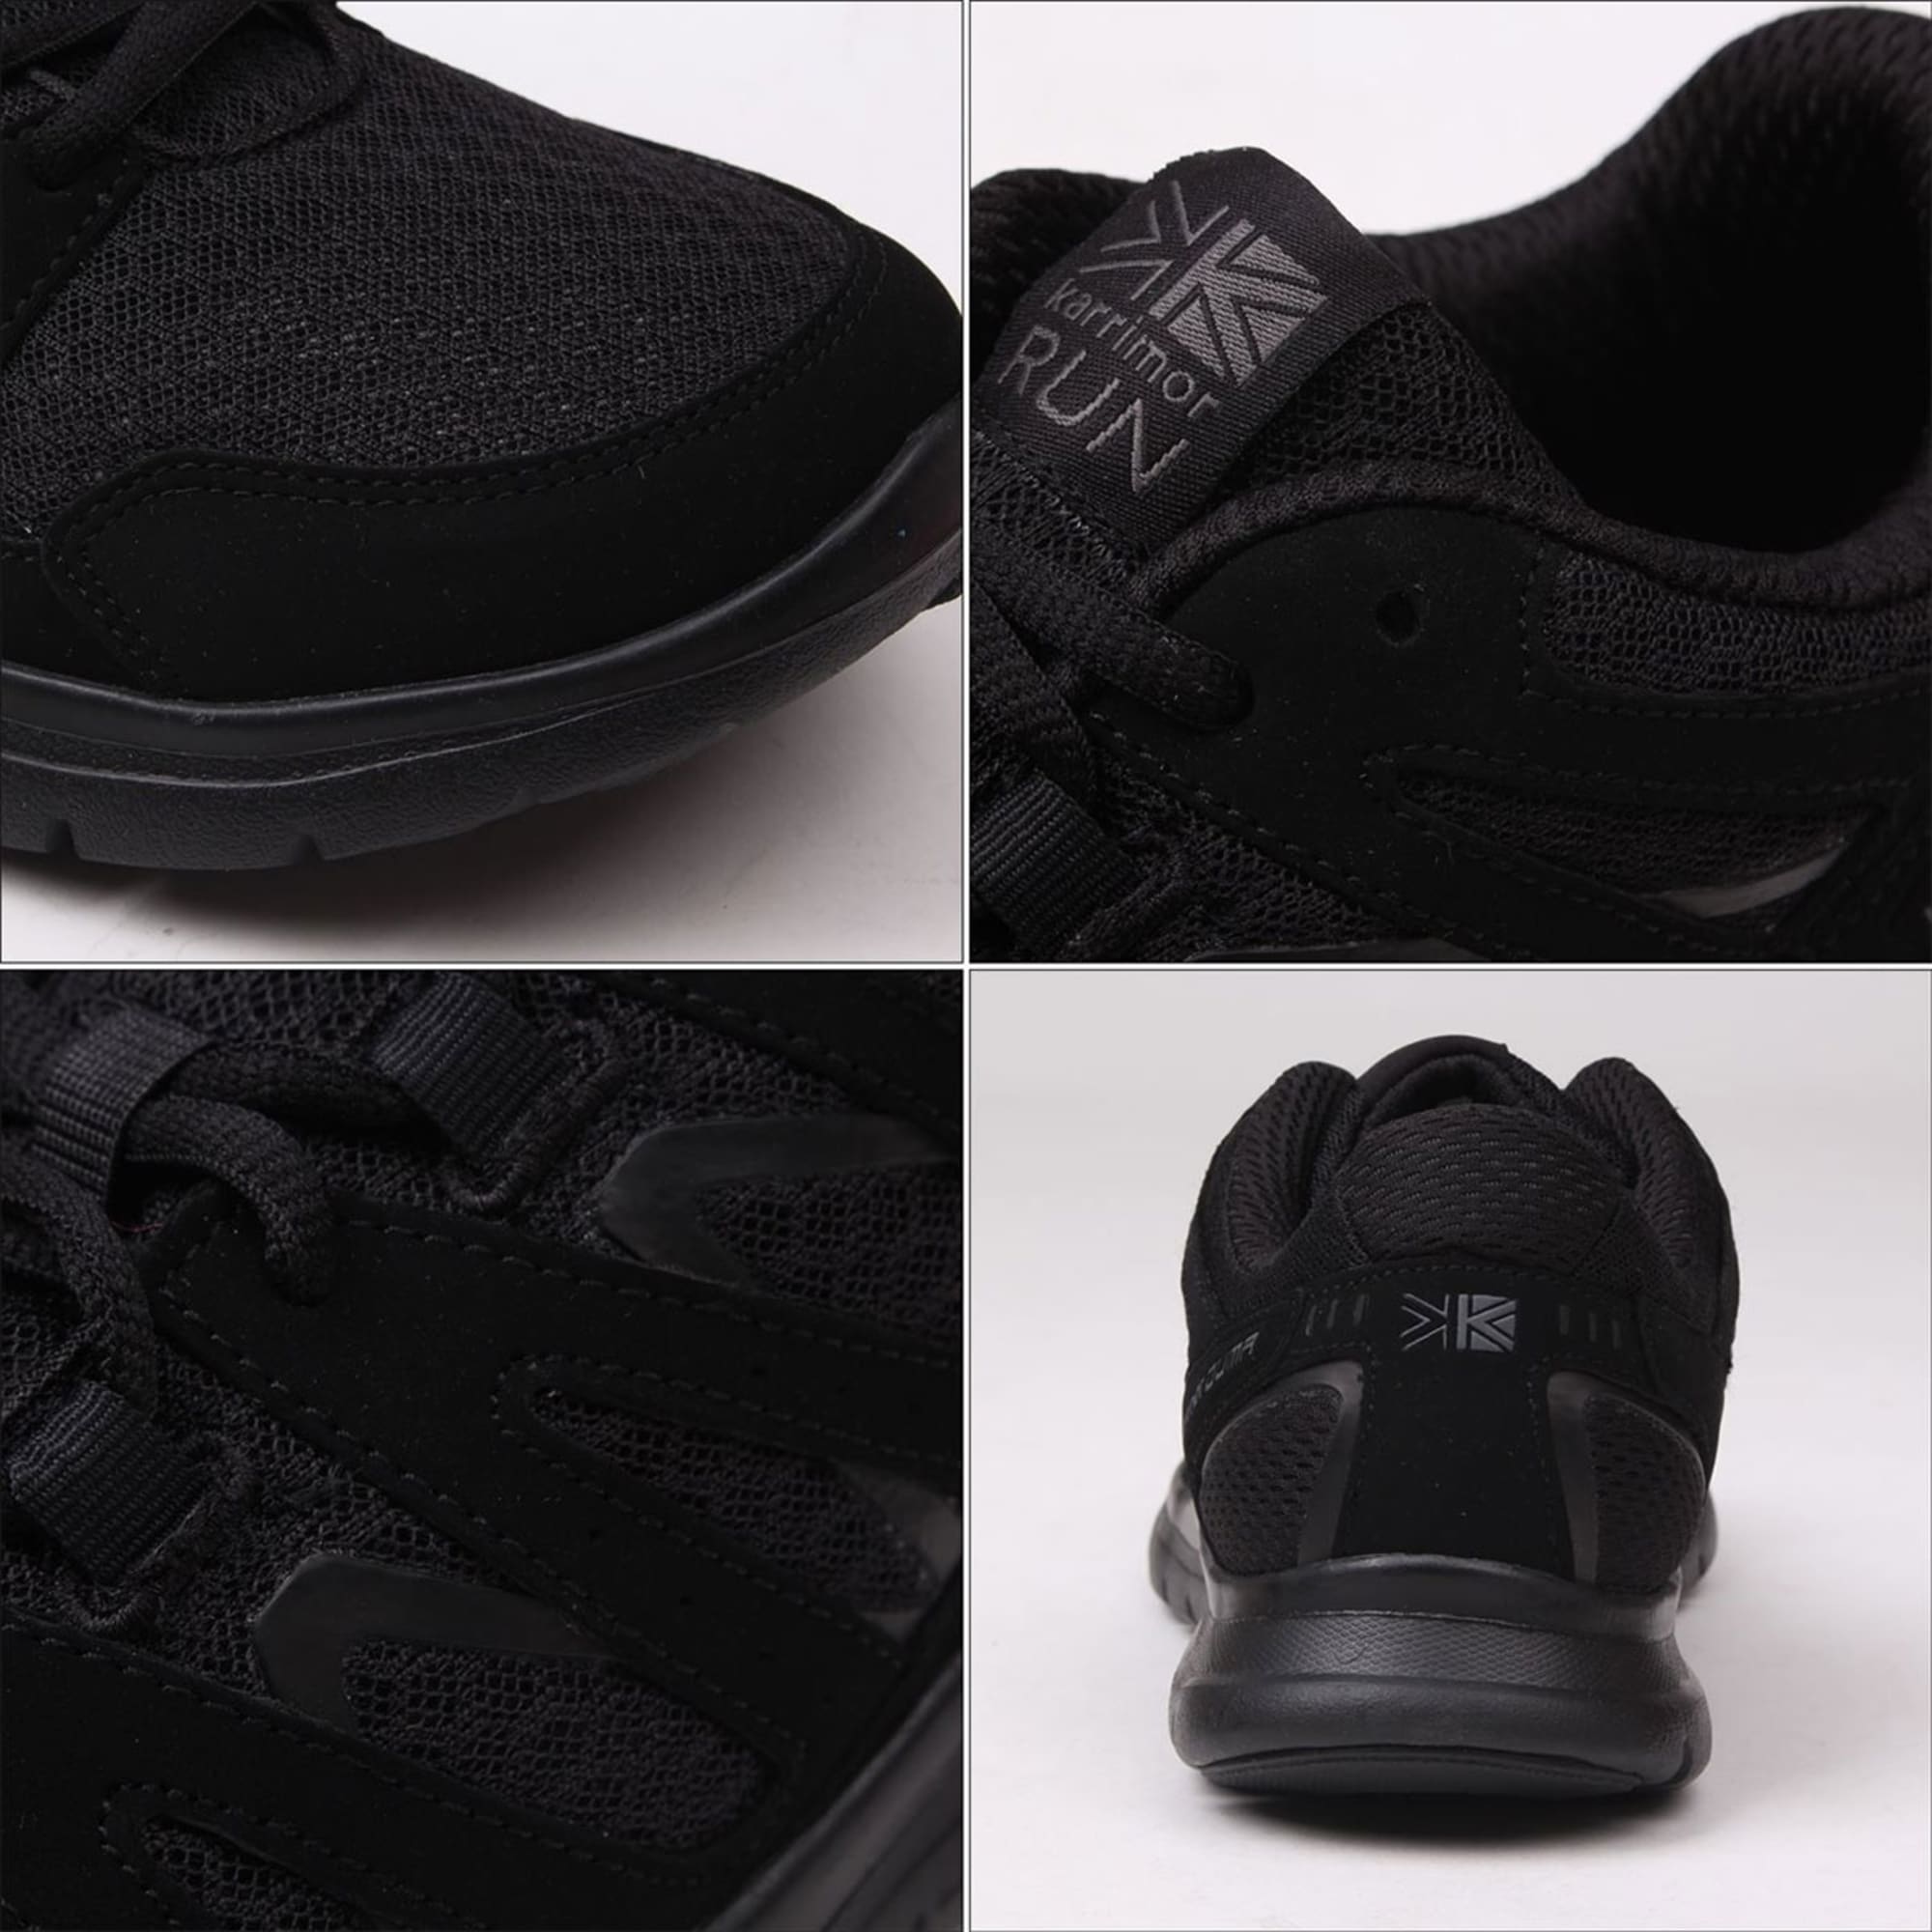 karrimor black running shoes